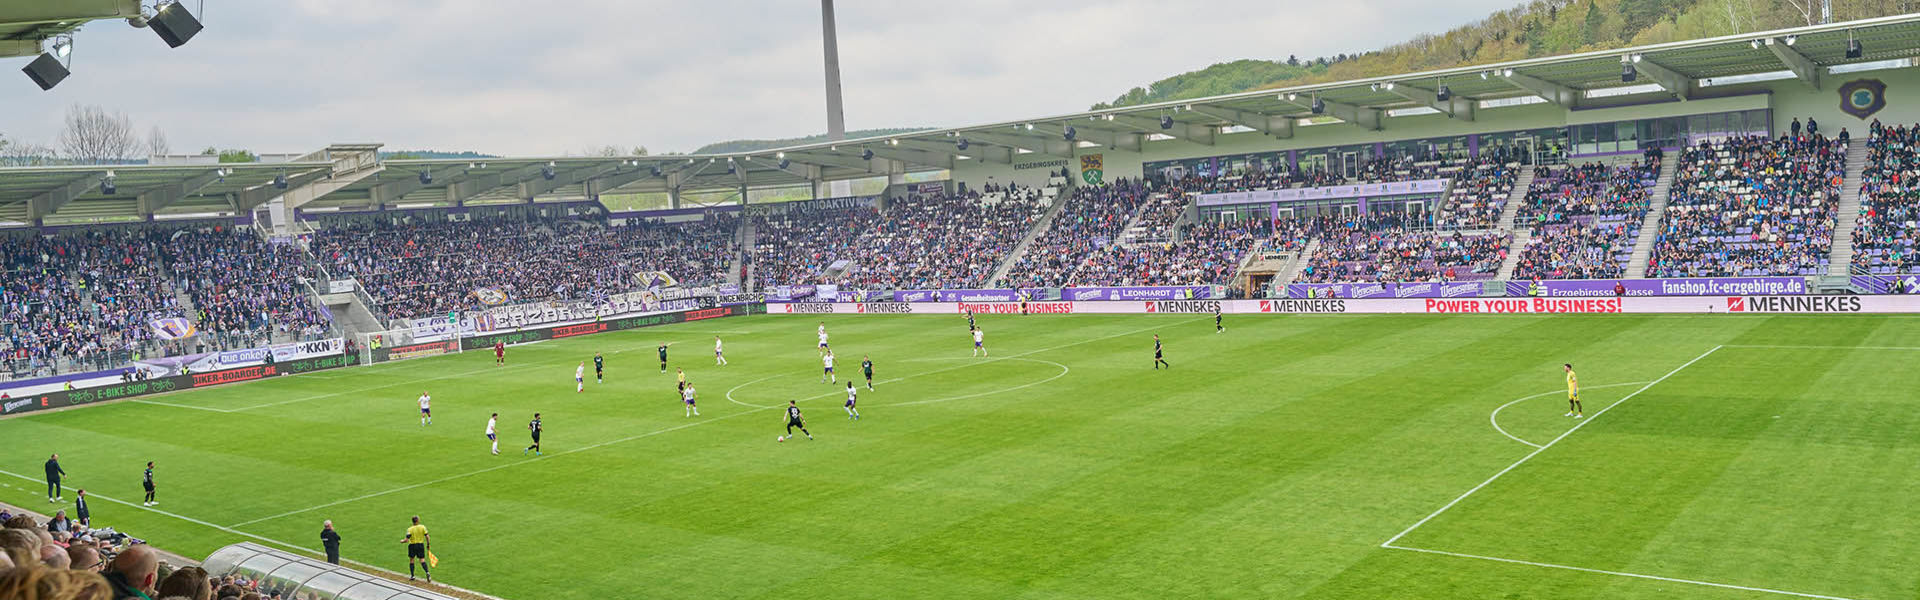 Eine Innen-Aufnahme des Stadions von Erzgebirge Aue während eines Fußballspiels